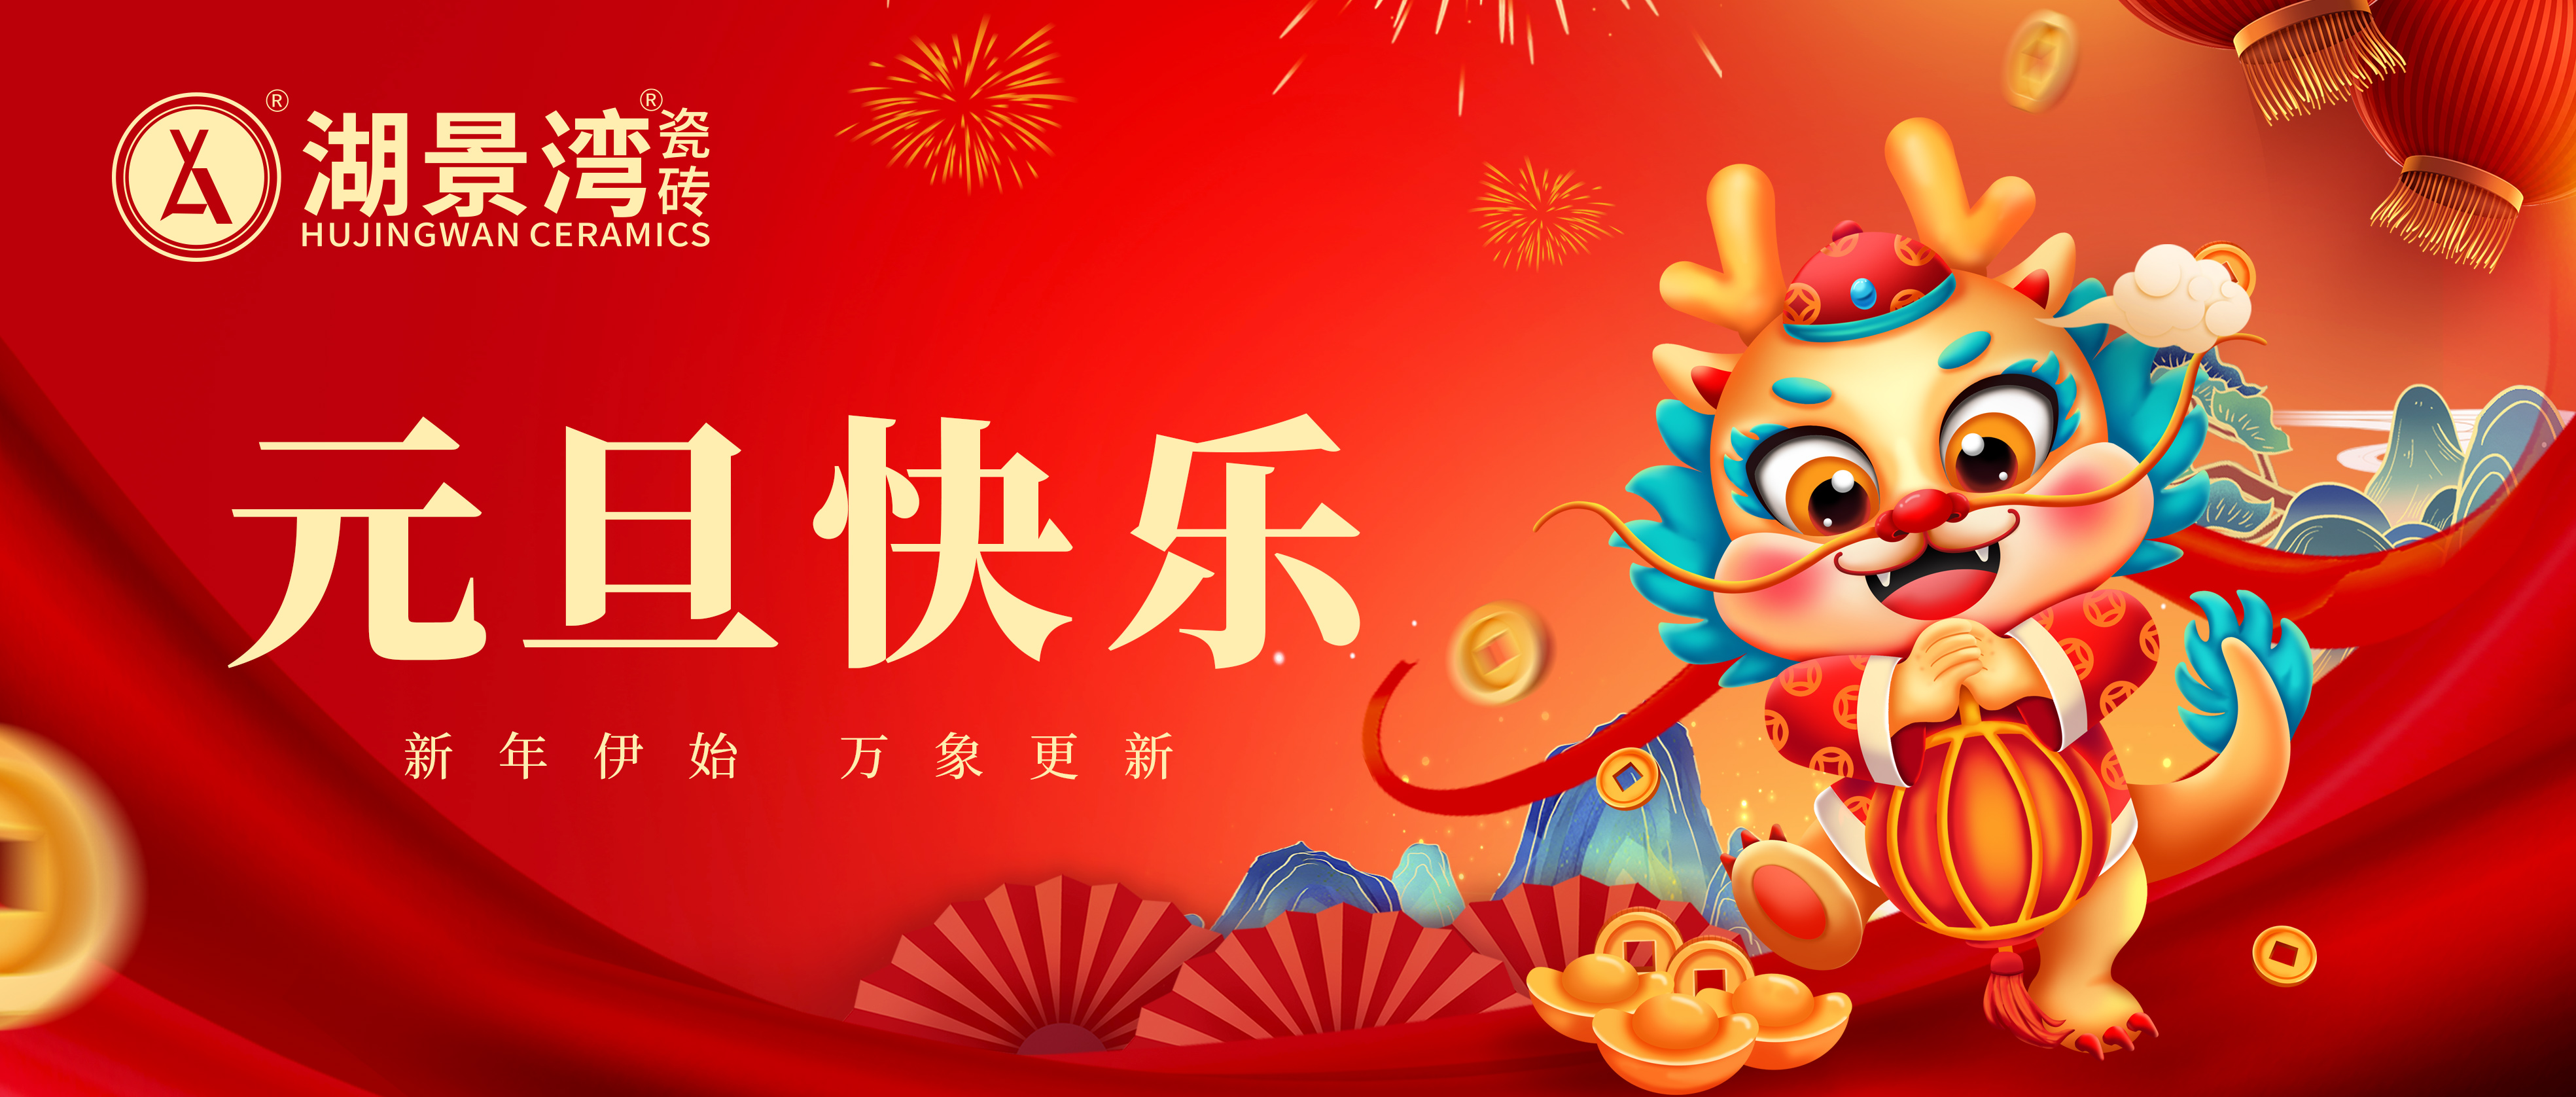 元旦 | 愿美好与您相遇，湖景湾瓷砖祝您新年快乐！